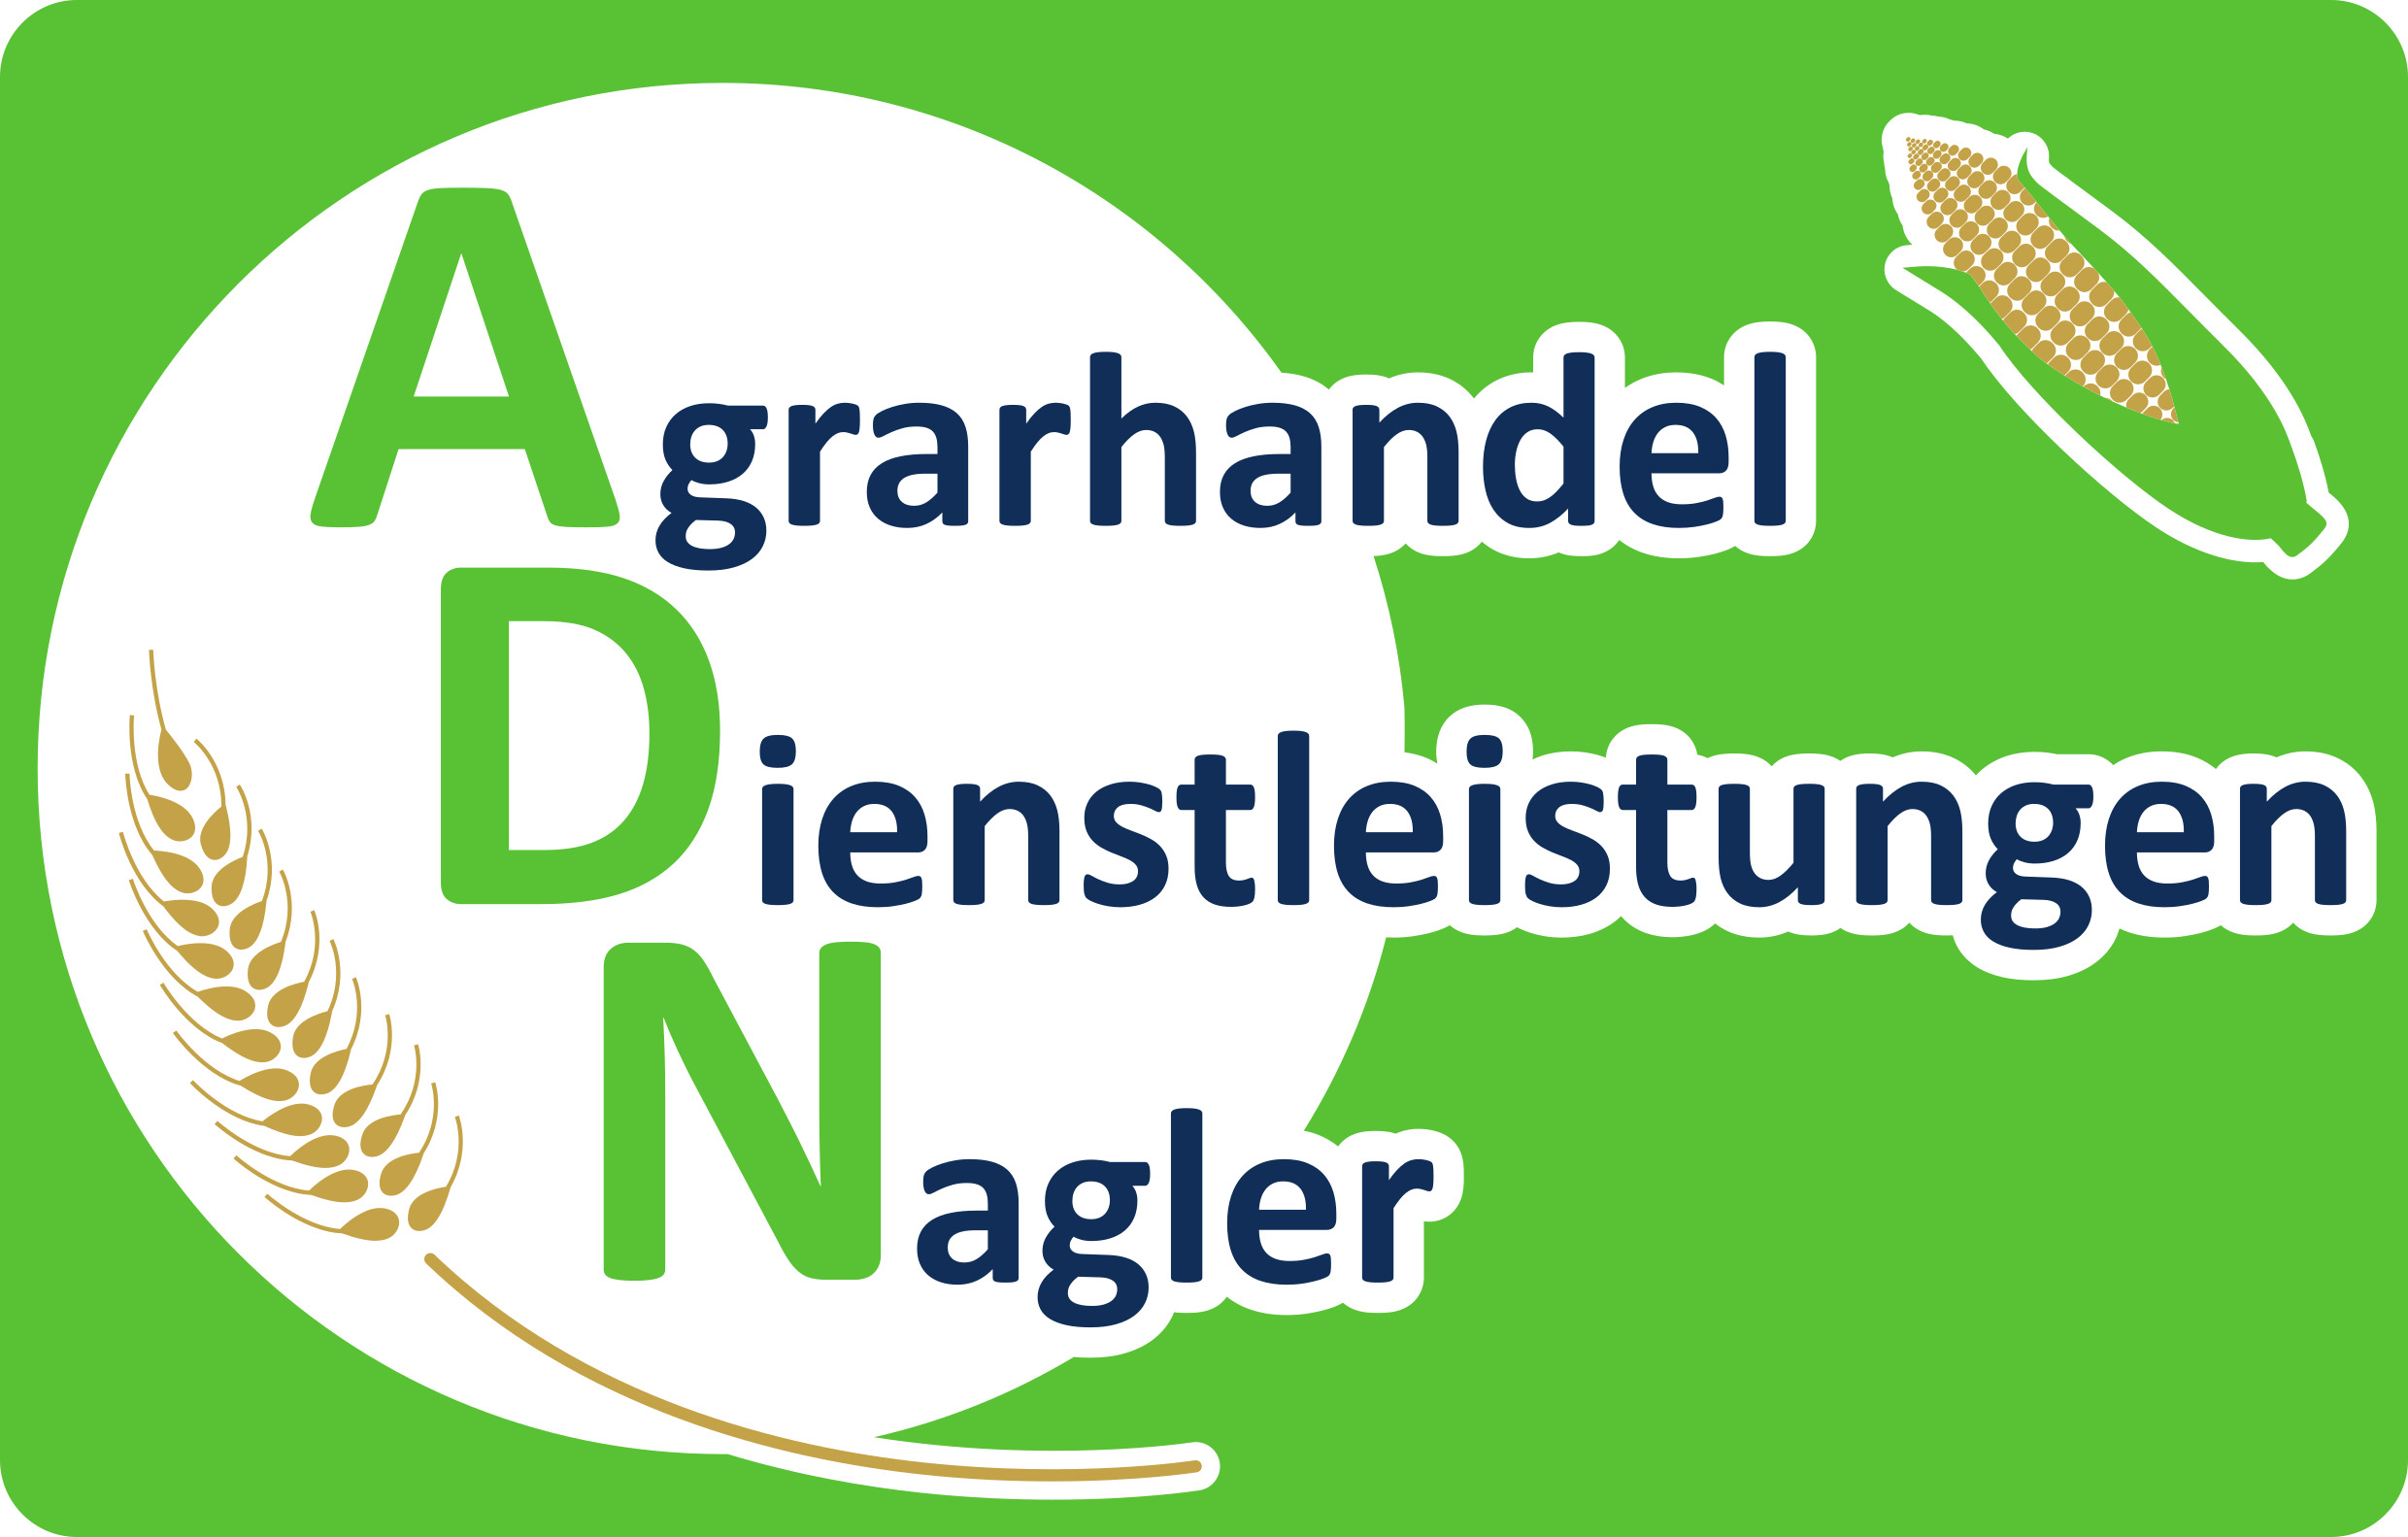 AD-Nagler GmbH & Co. KG